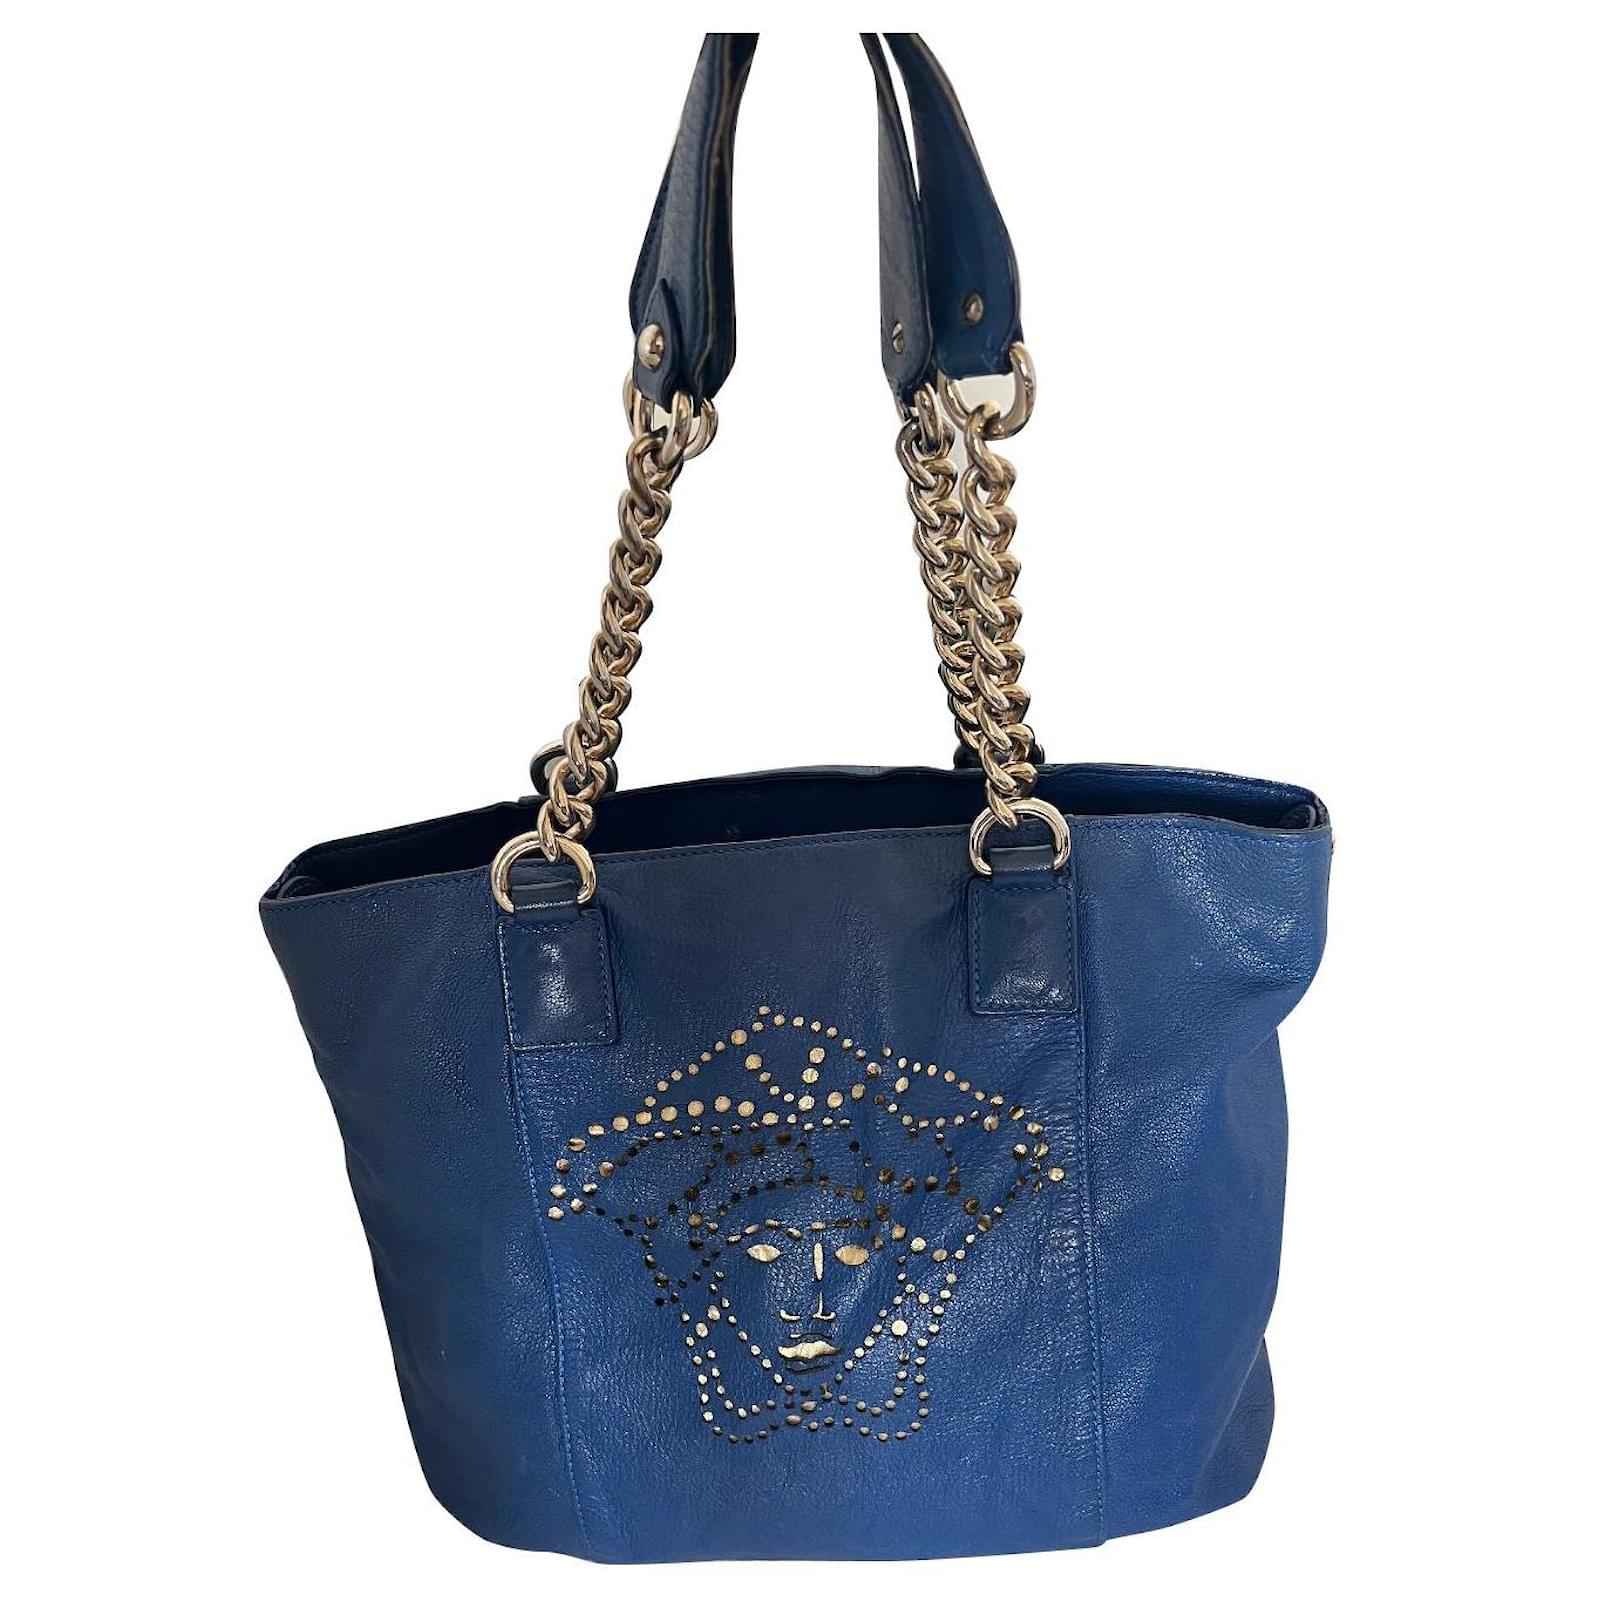 Versace Medusa-embellished Tote Bag